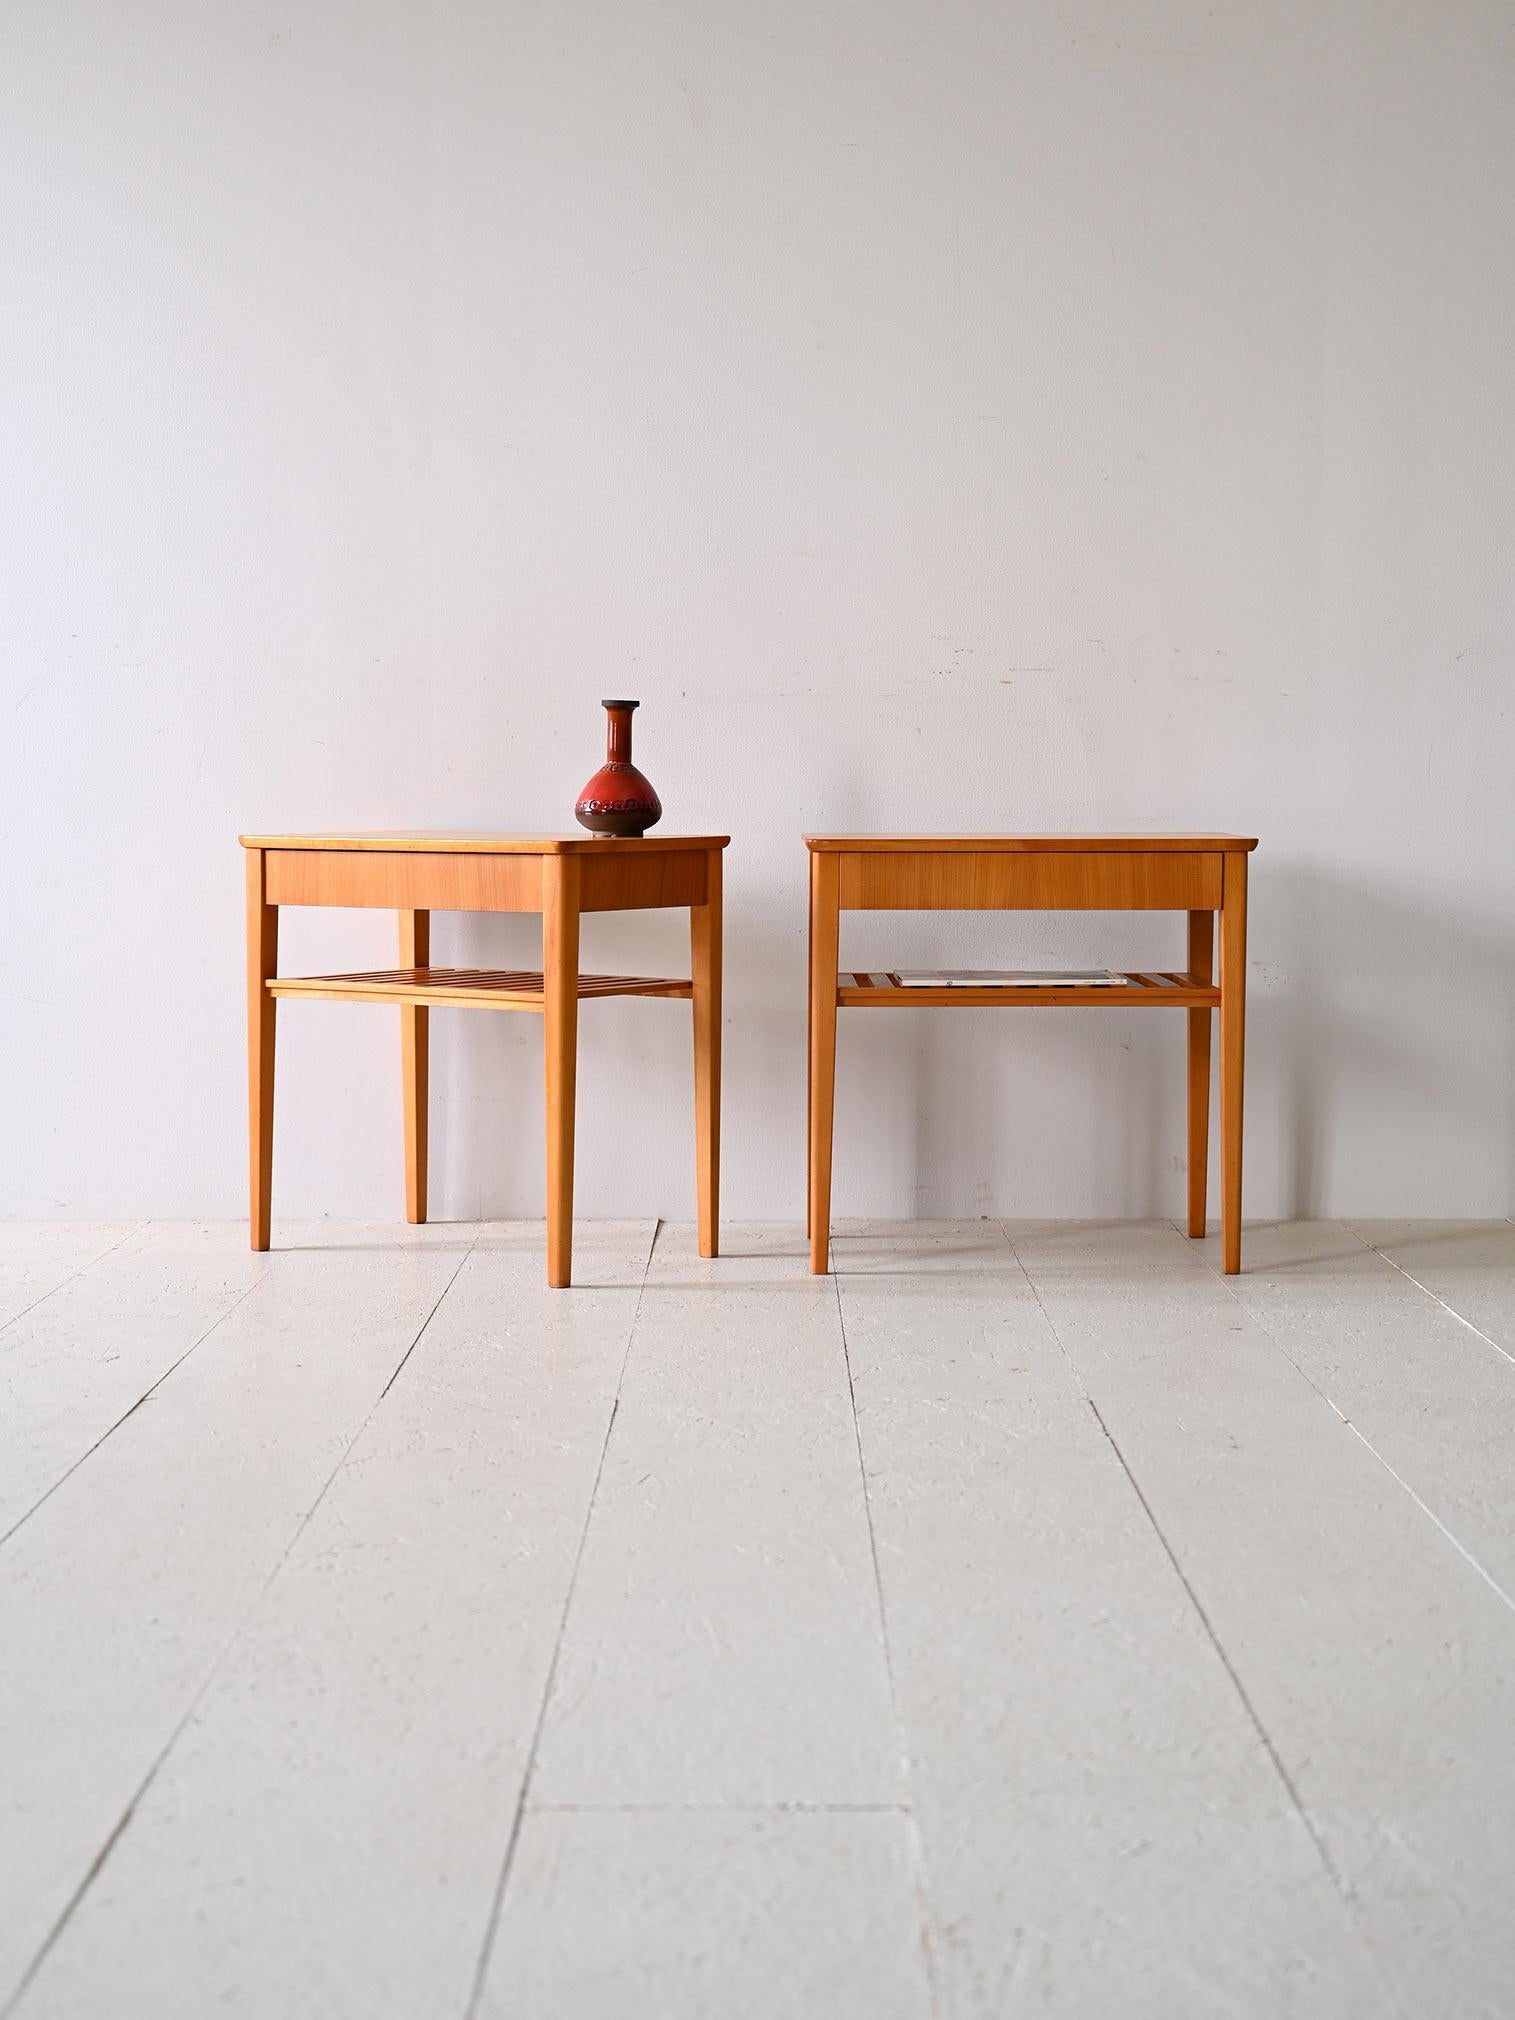 Paire de tables basses/de chevet scandinaves originales des années 1960.

Élégante et fonctionnelle, cette paire de tables de chevet incarne le style nordique avec des lignes extrêmement simples et épurées, caractérisées par un design minimal et